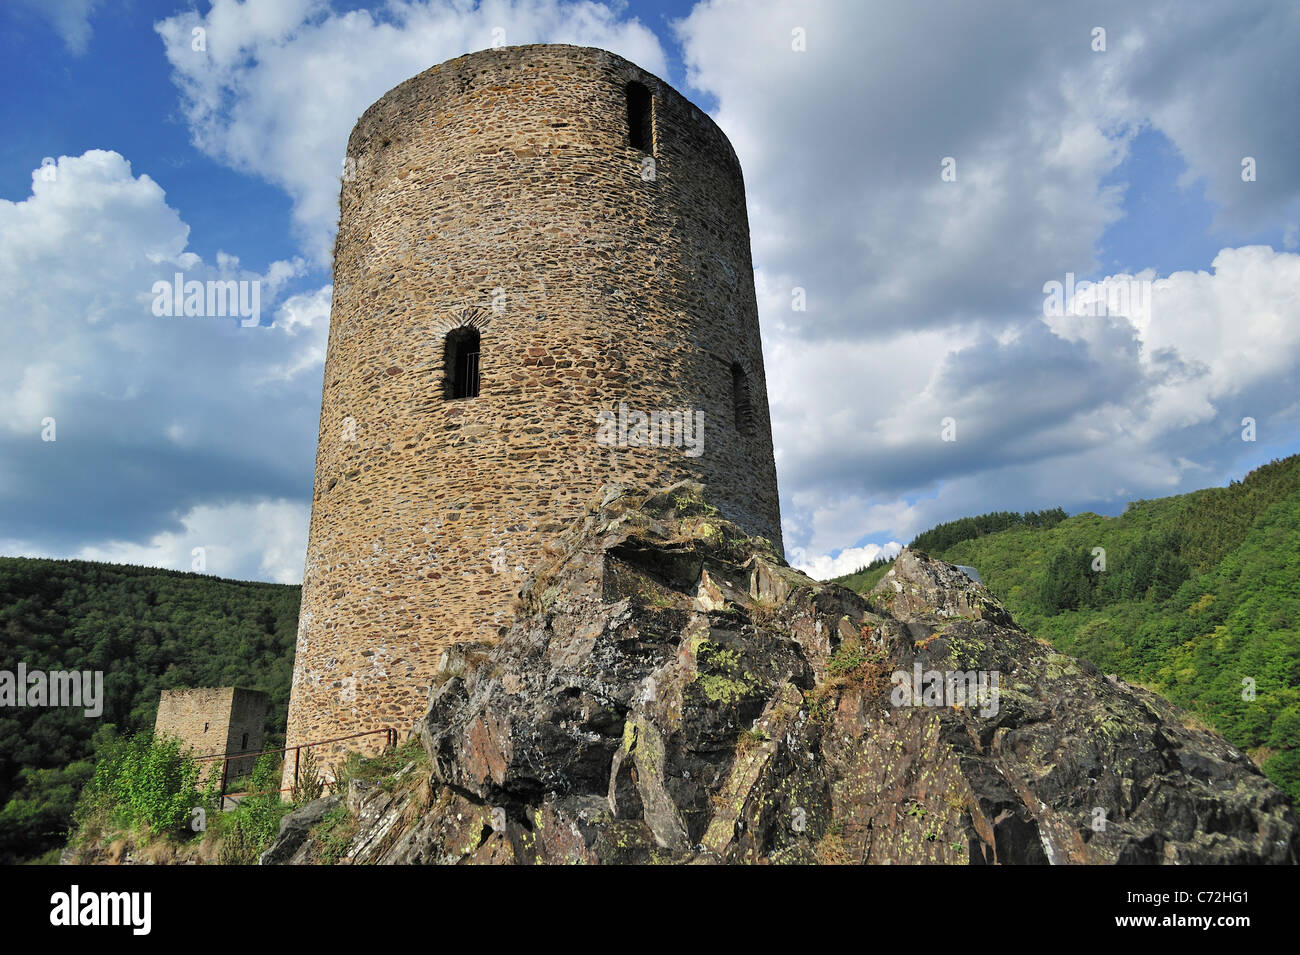 Ruine der mittelalterlichen Runde Wachturm / Lochturm im Dorf Esch-Sur-Sûre / Esch-Sauer, Luxemburg Stockfoto